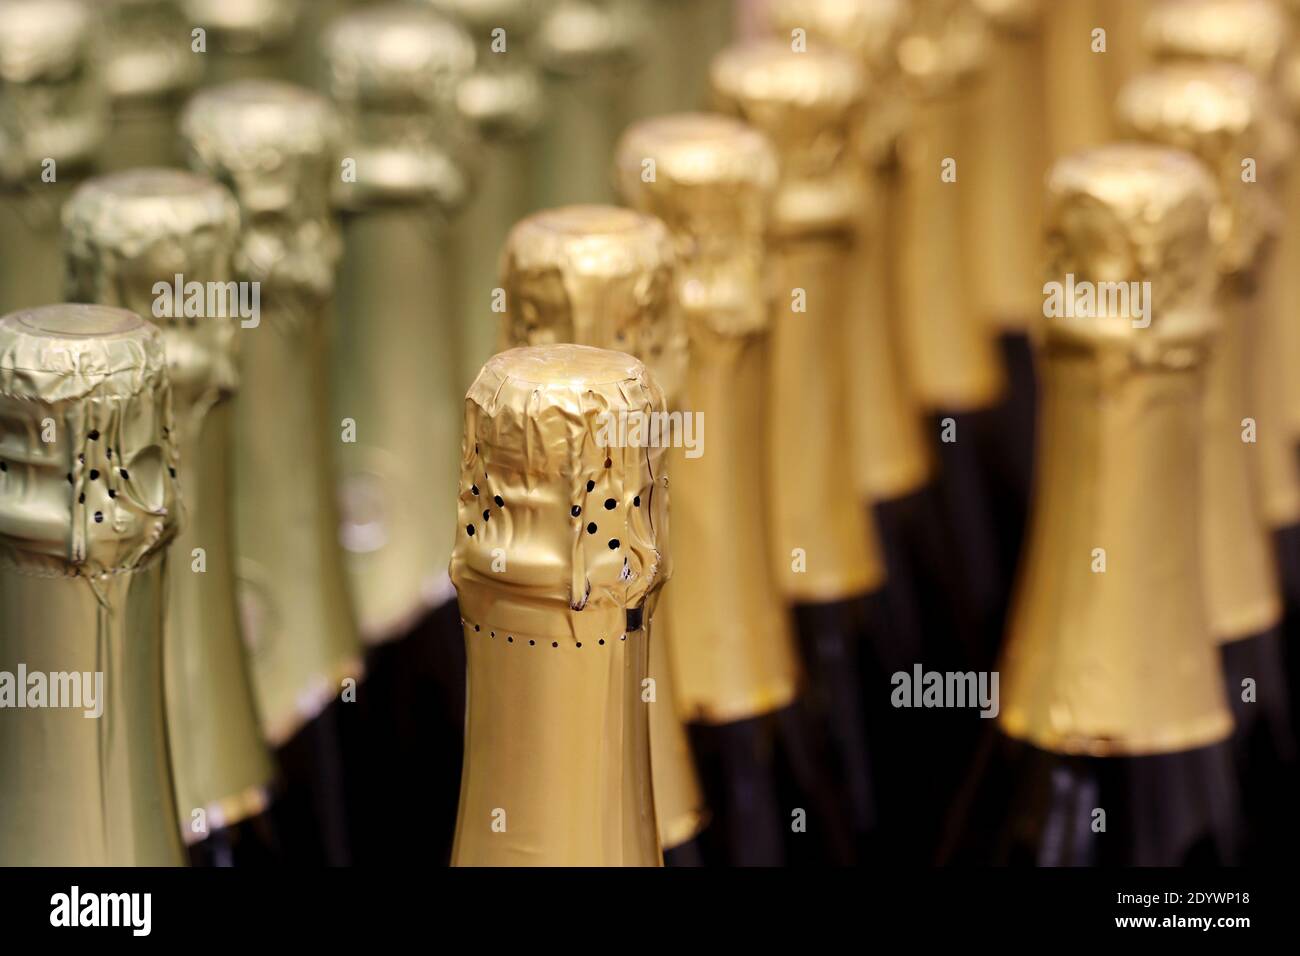 Bottiglie di vino frizzante in lamina d'oro per festeggiare. Champagne in enoteca, industria dell'alcol Foto Stock